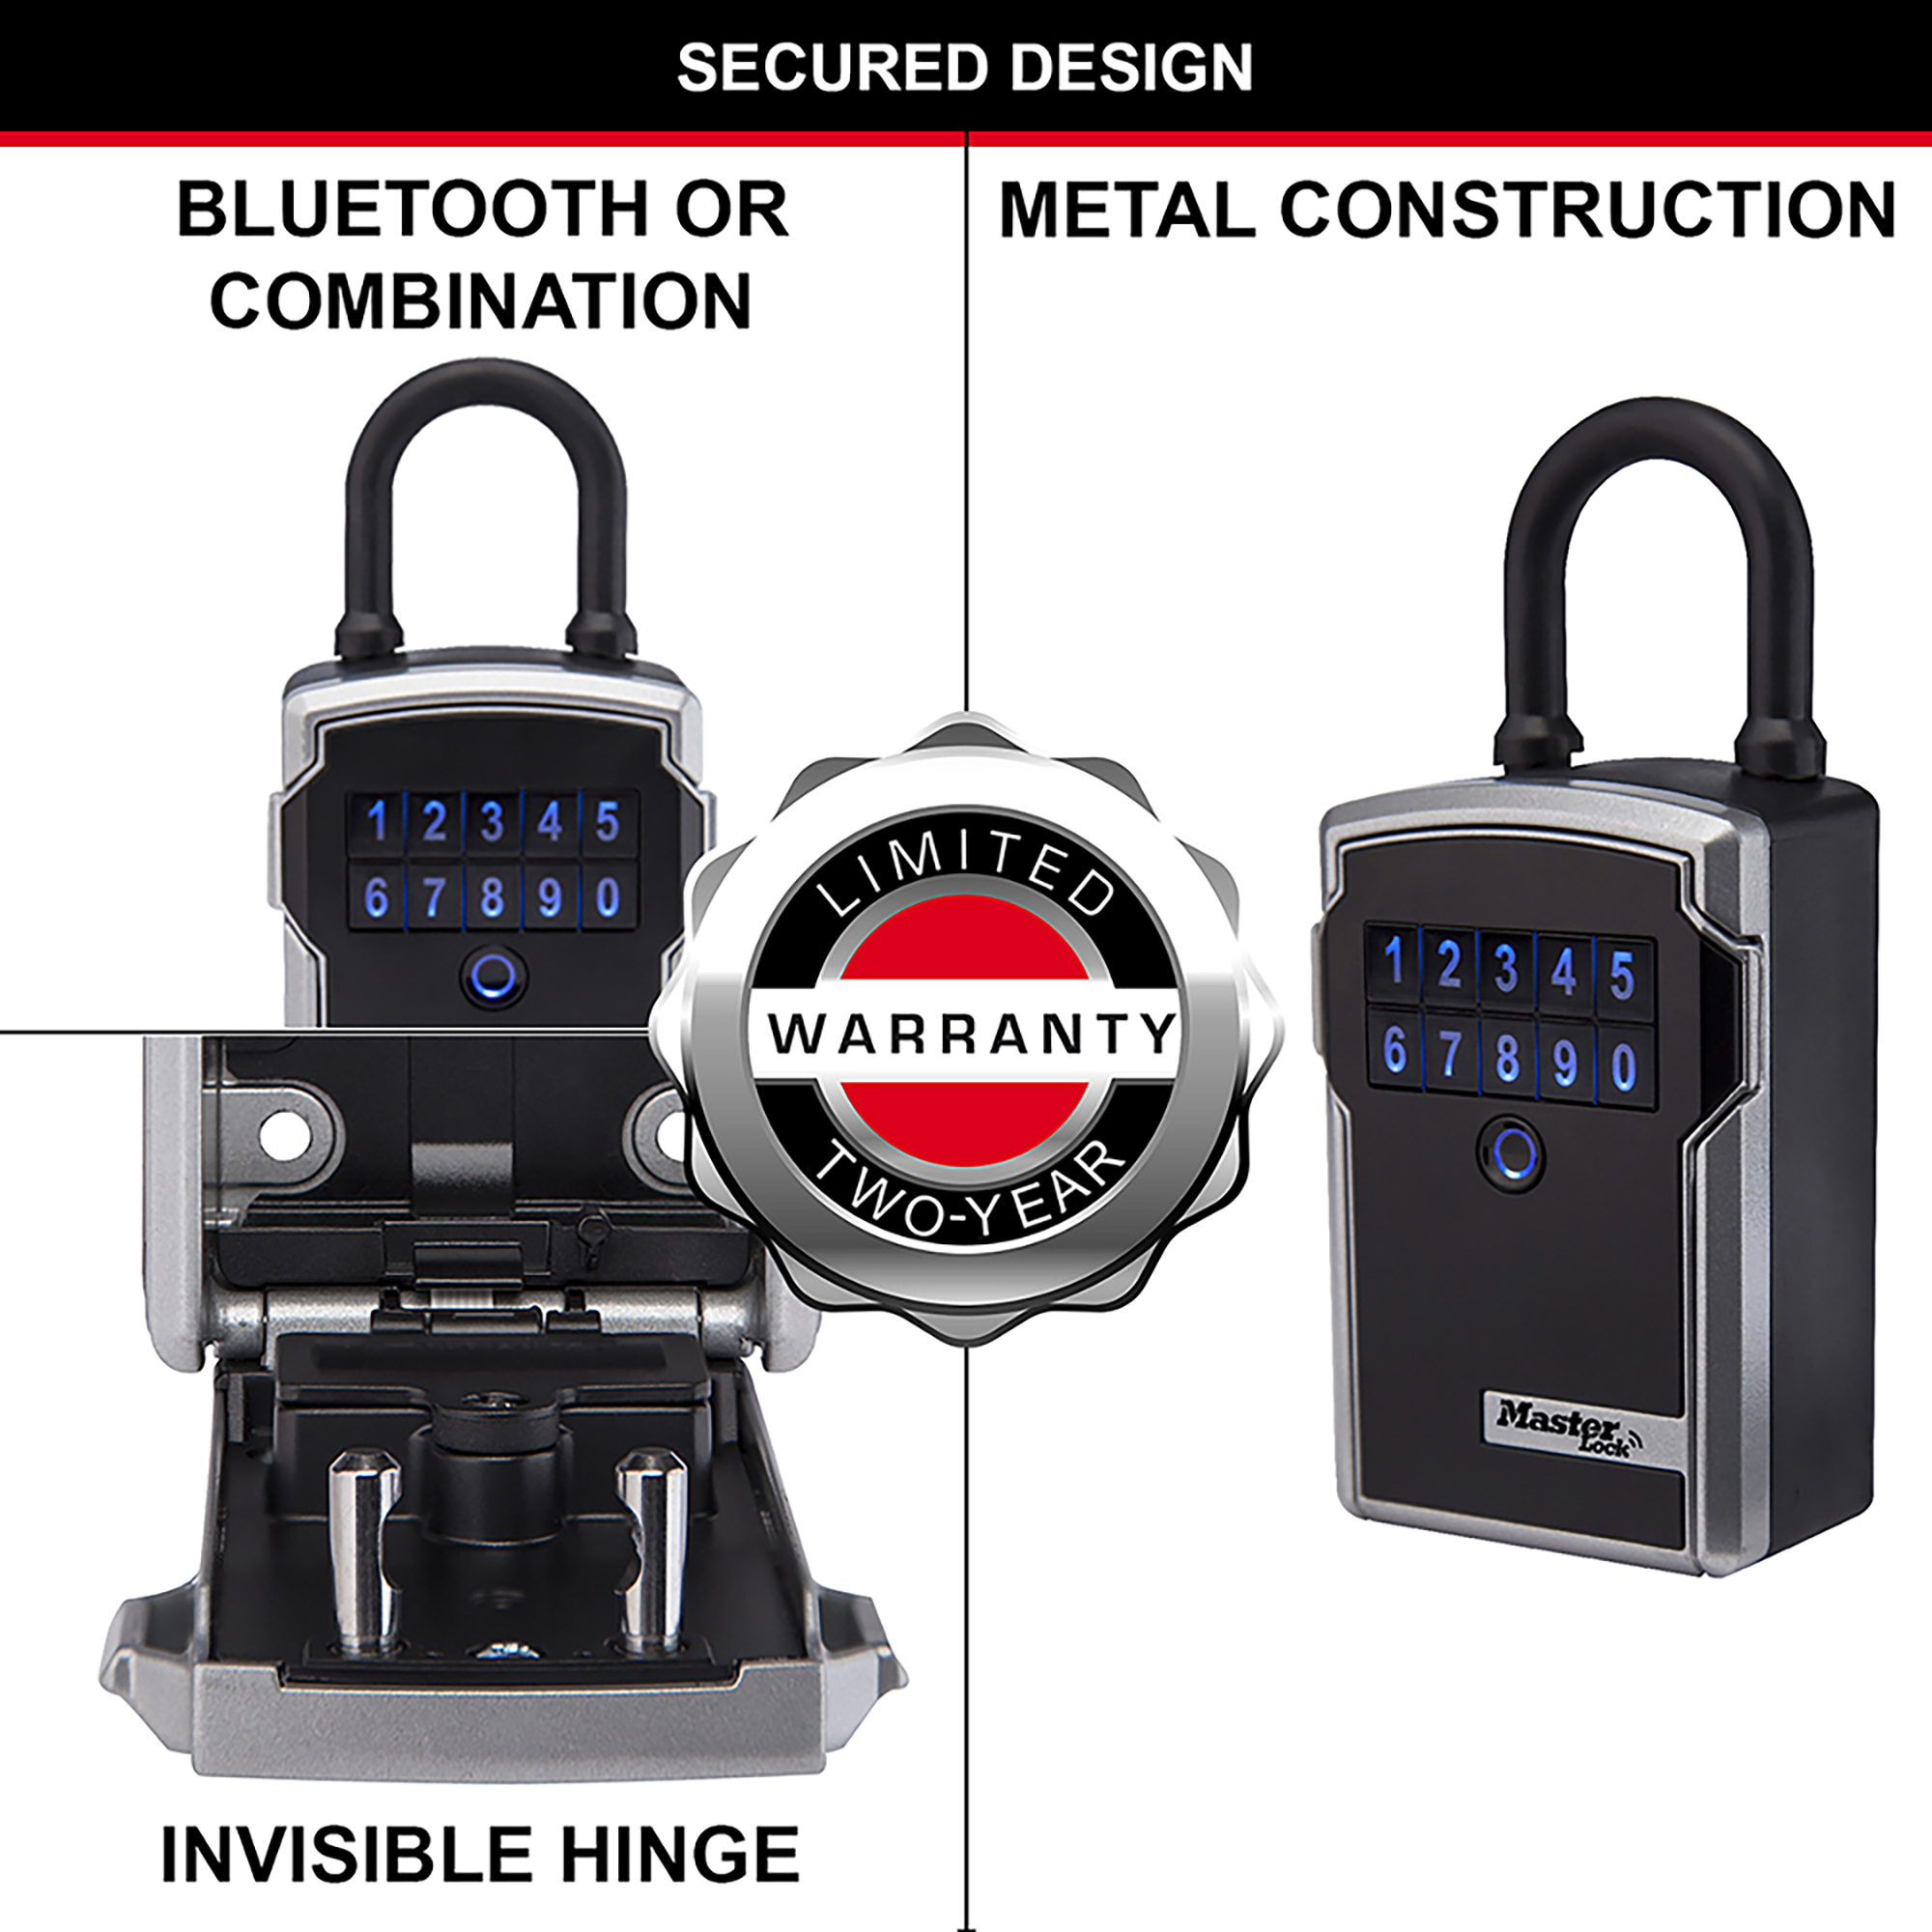 Boîte à Clé Connectée Bluetooth ou Combinaison- Master Lock- Preventimark